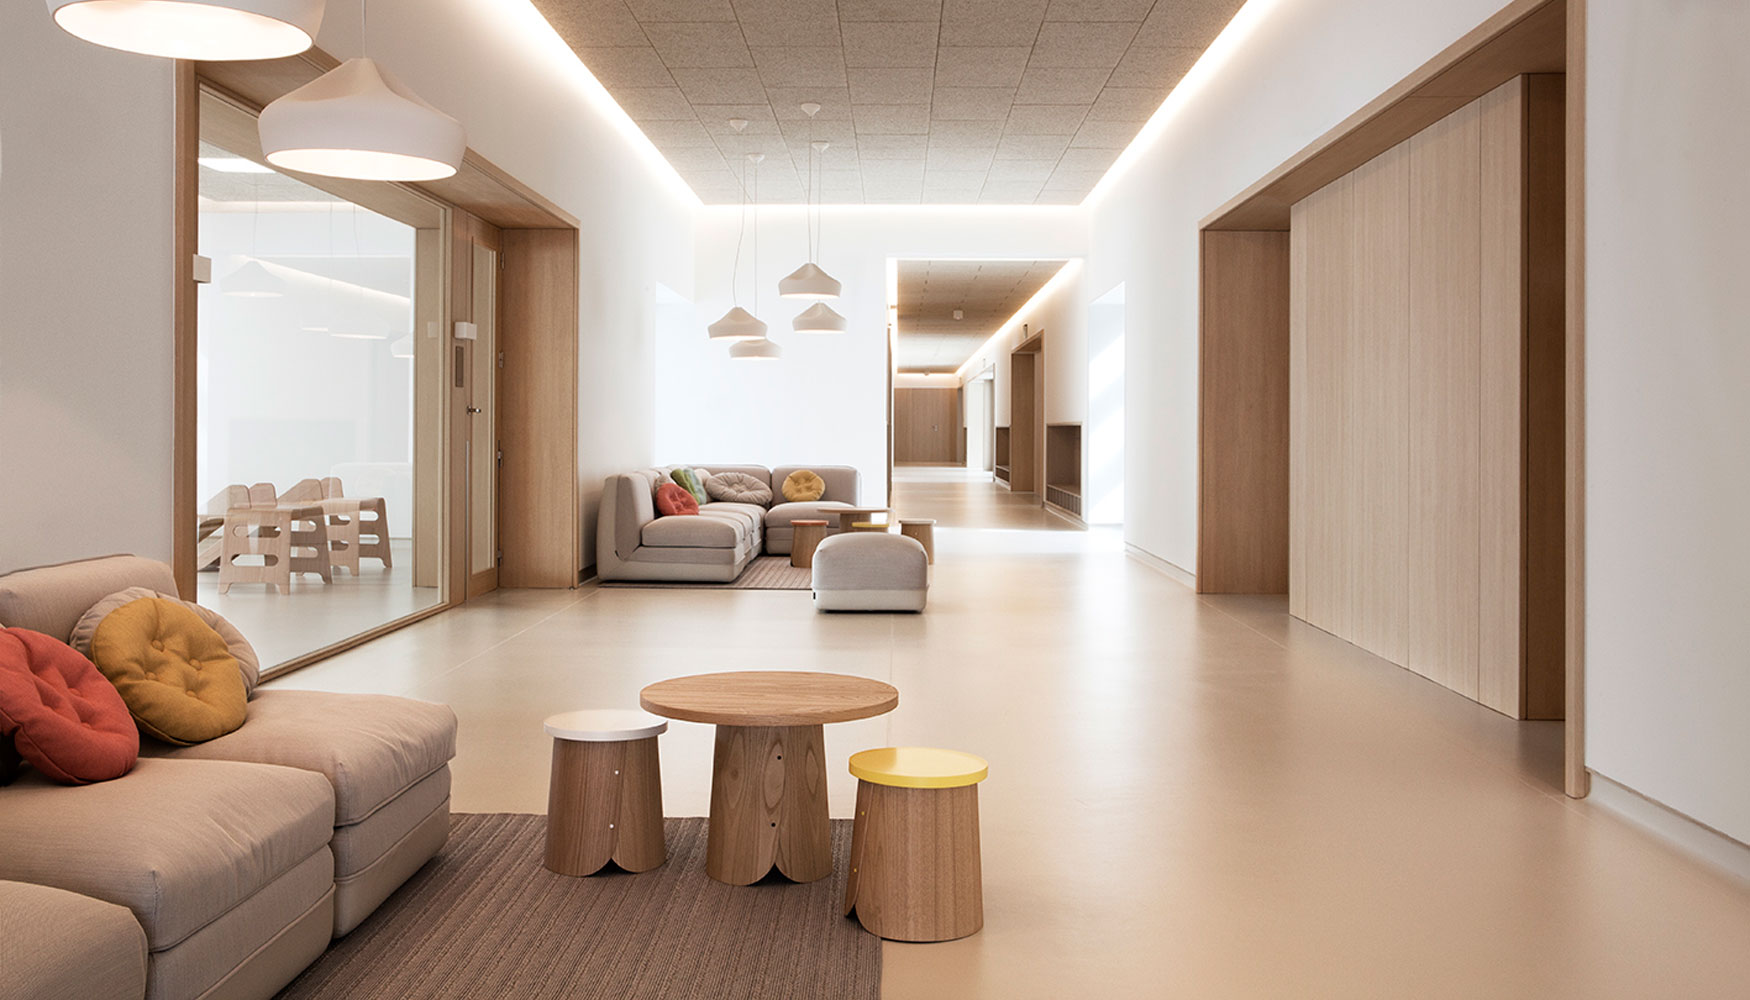 Las salas del nuevo edificio se caracterizan por ofrecer los mejores niveles de climatizacin y confort